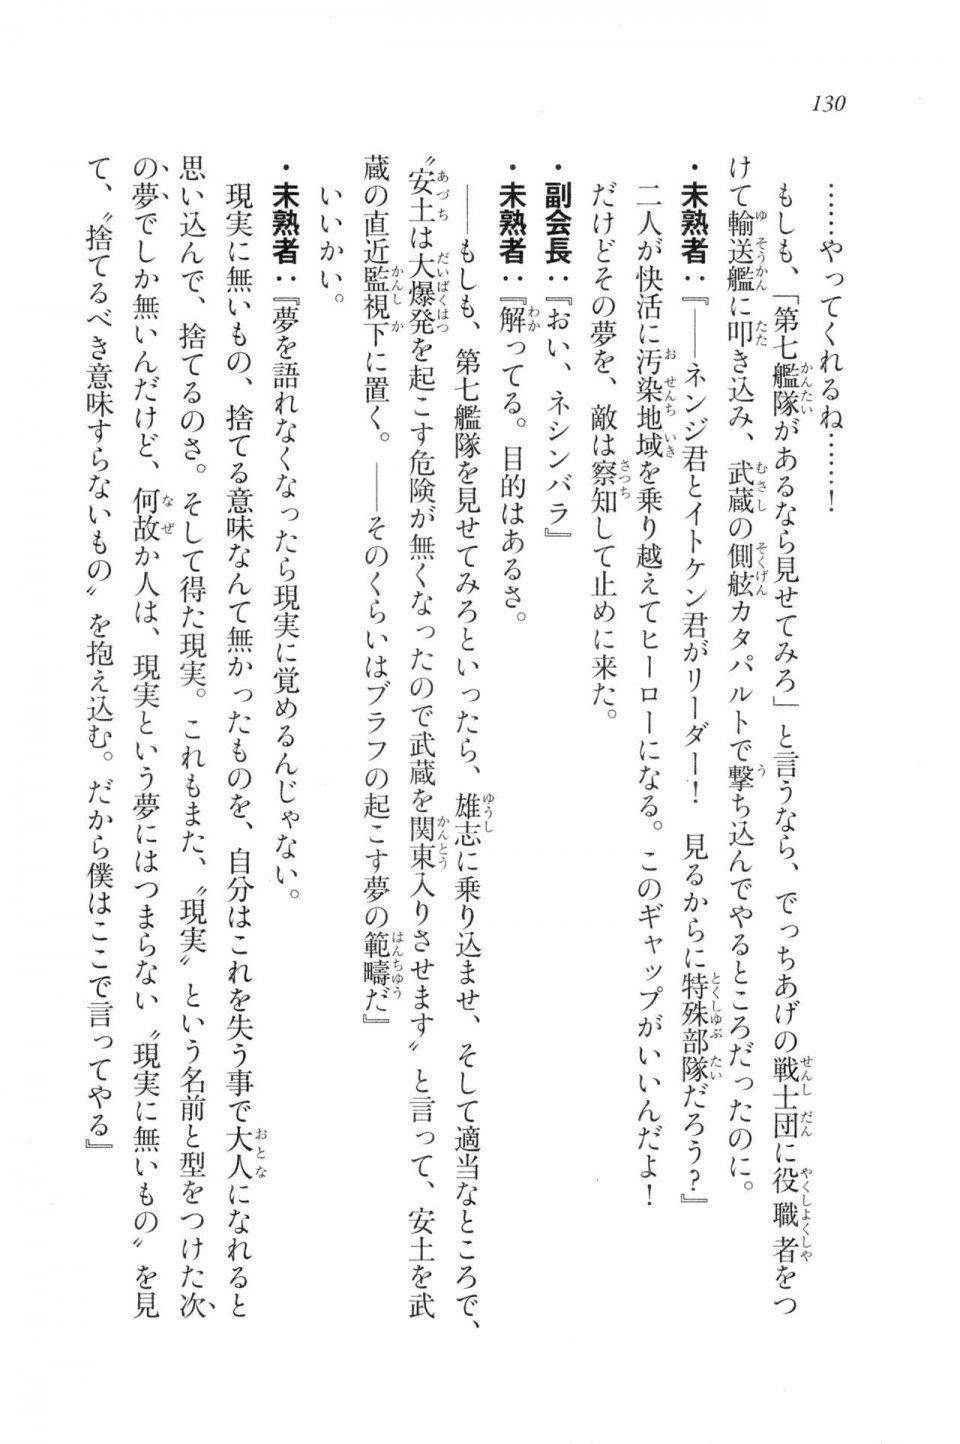 Kyoukai Senjou no Horizon LN Vol 20(8B) - Photo #130